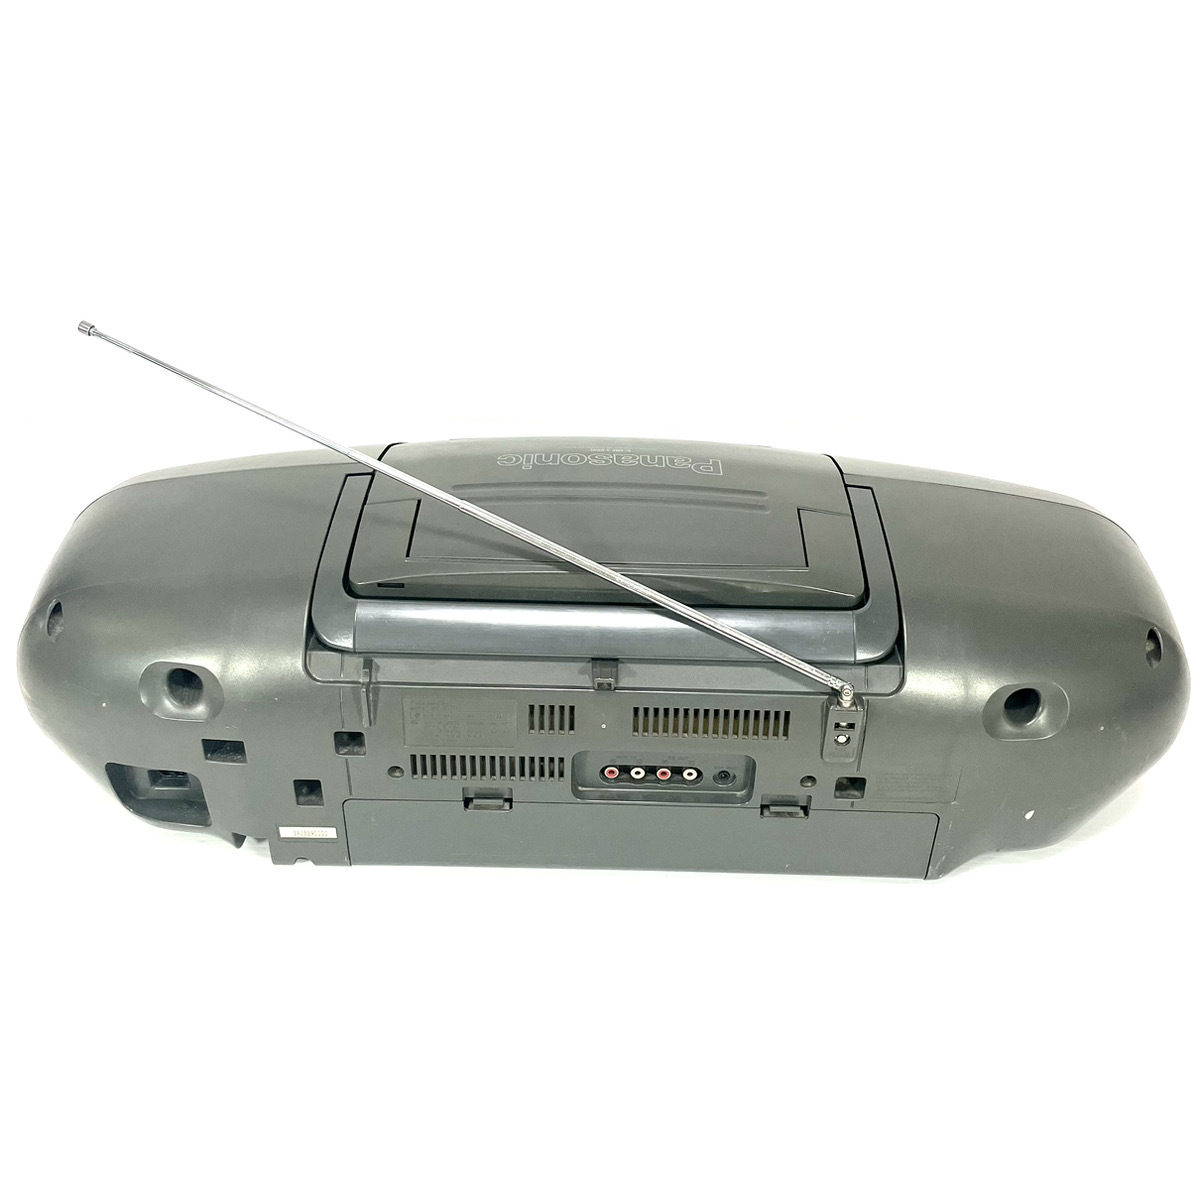 【稀少銘機/動作美品】Panasonic パナソニック RX-DT707 バブルラジカセ コブラトップ CD TAPE AM FM RX-DT909 の兄弟機_画像7